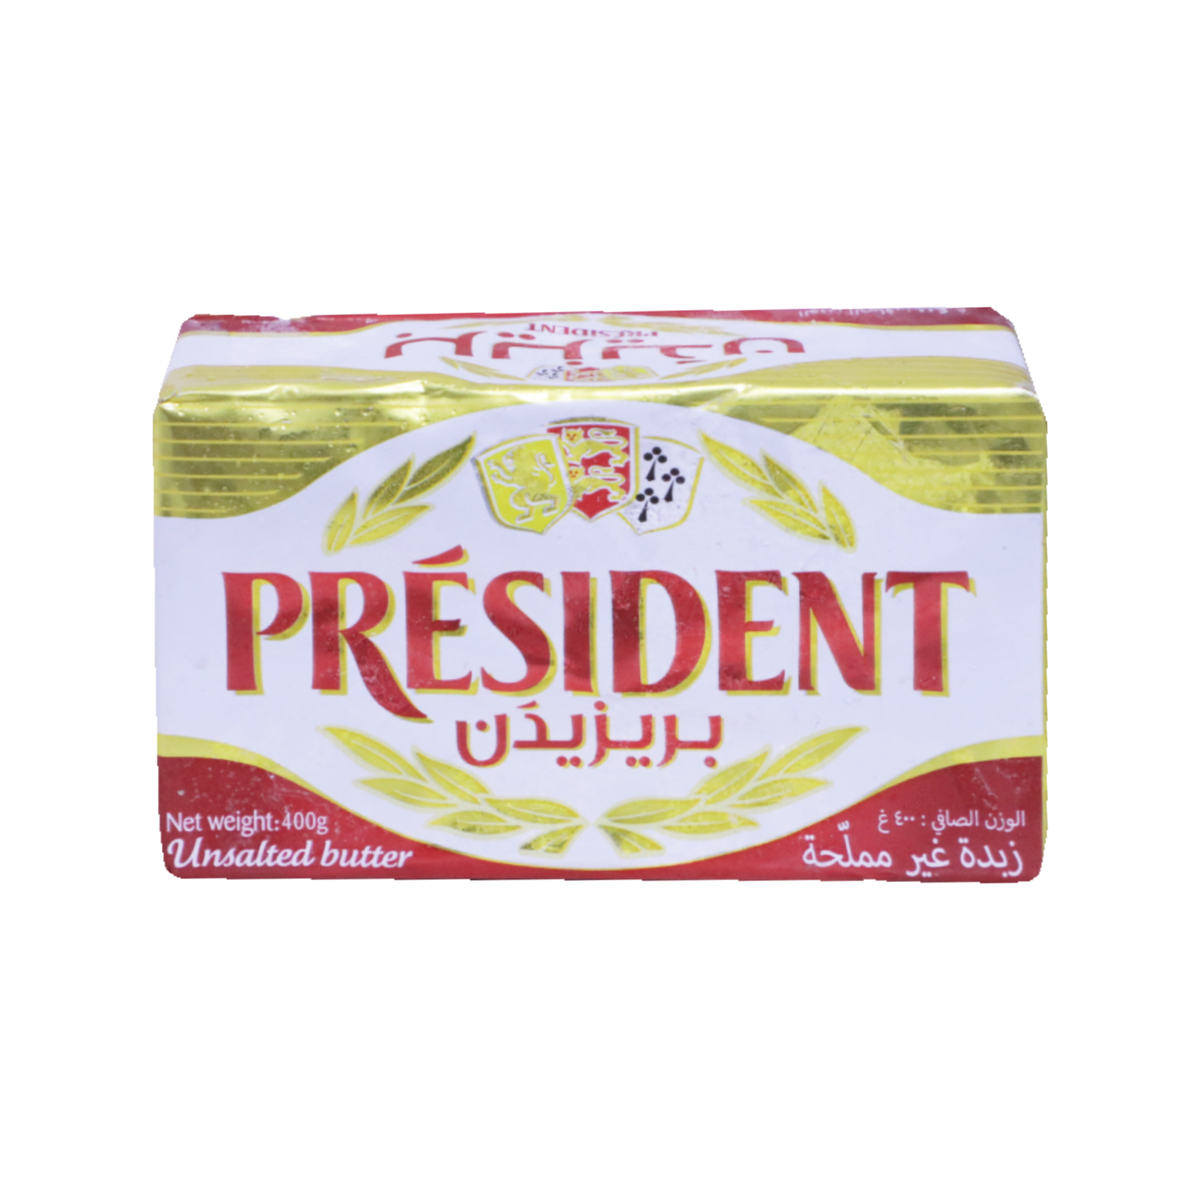 President Unsalted Butter 400 g